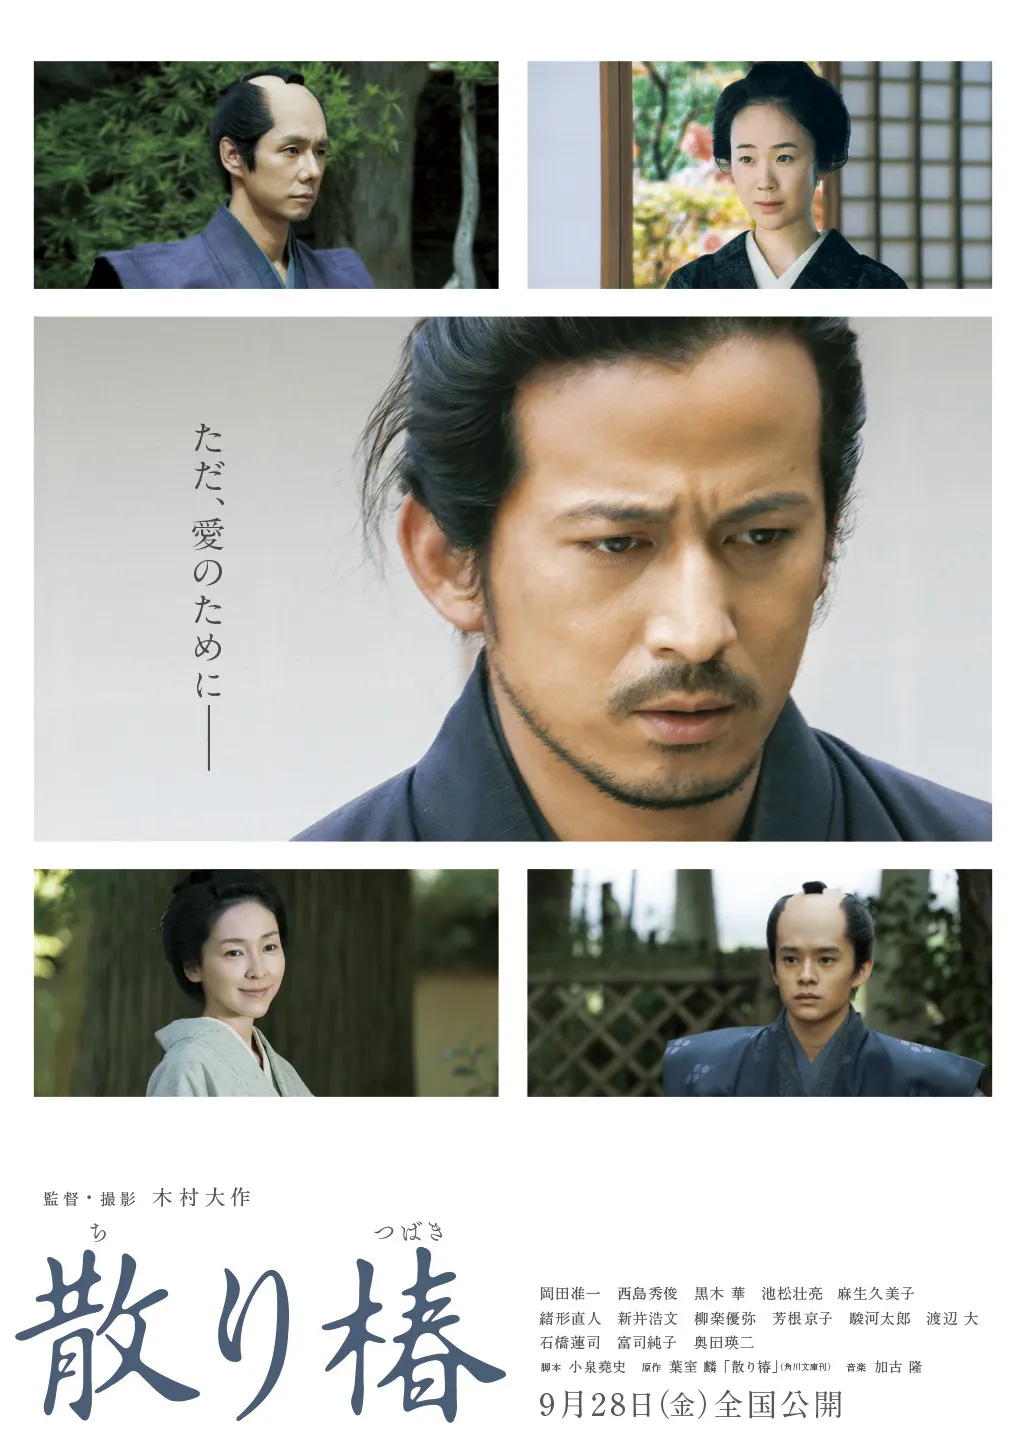 岡田准一が主演を務める「散り椿」は9月28日(金)に公開